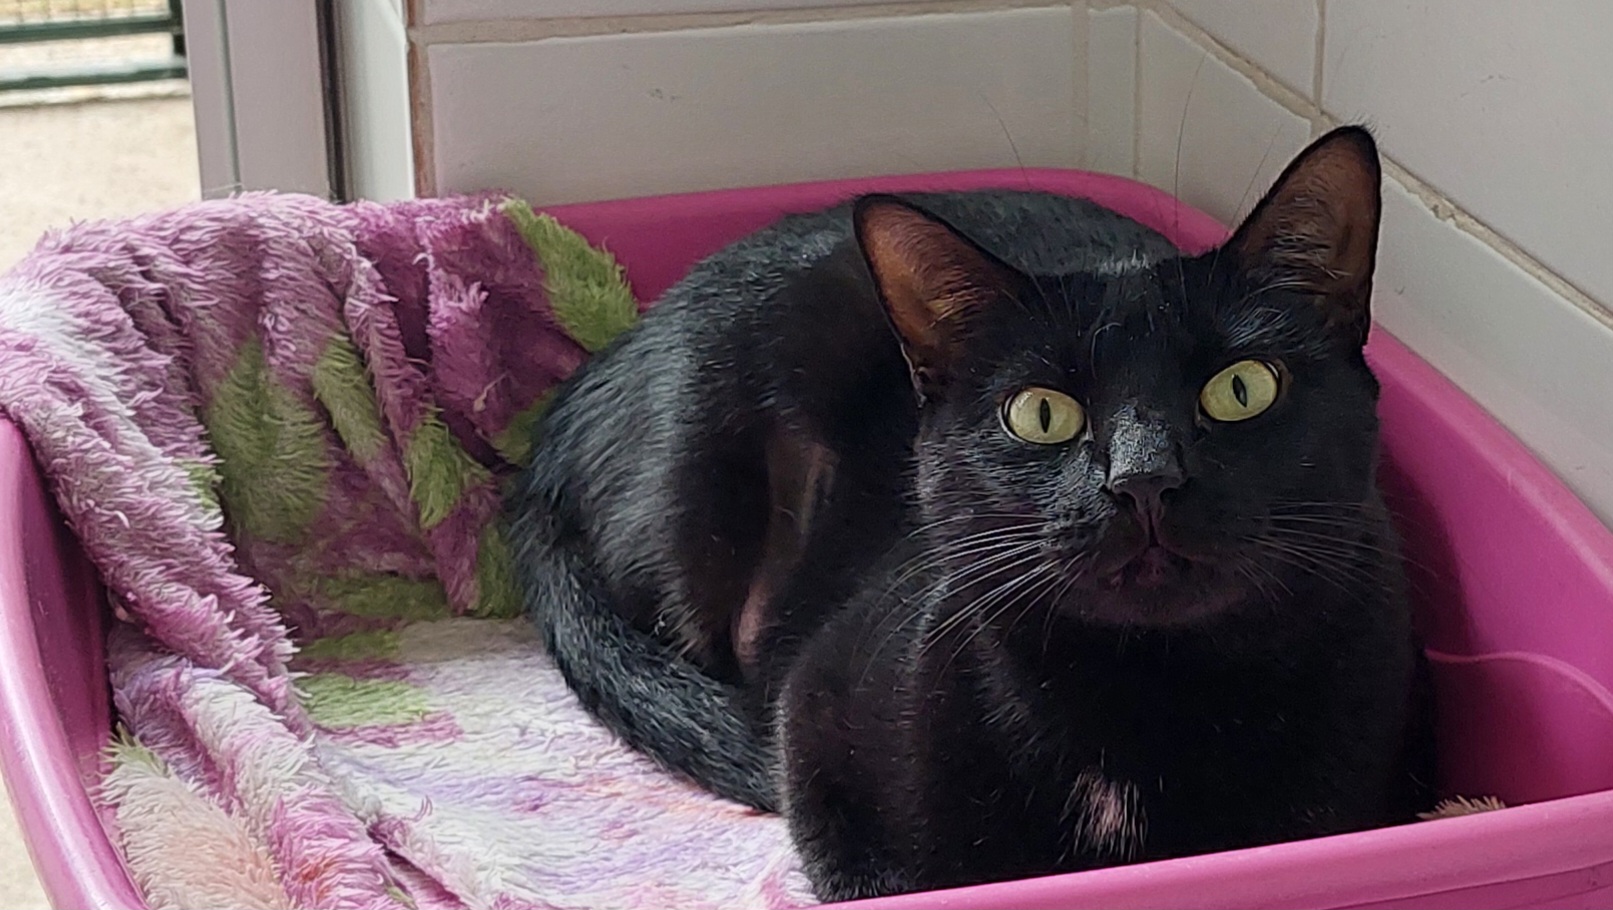 #PraCegoVer: Pantera é uma gata com pelagem completamente preta, seus olhos são verdes, ela esta deitada olhando para frente em uma caixa rosa com uma coberta rosa